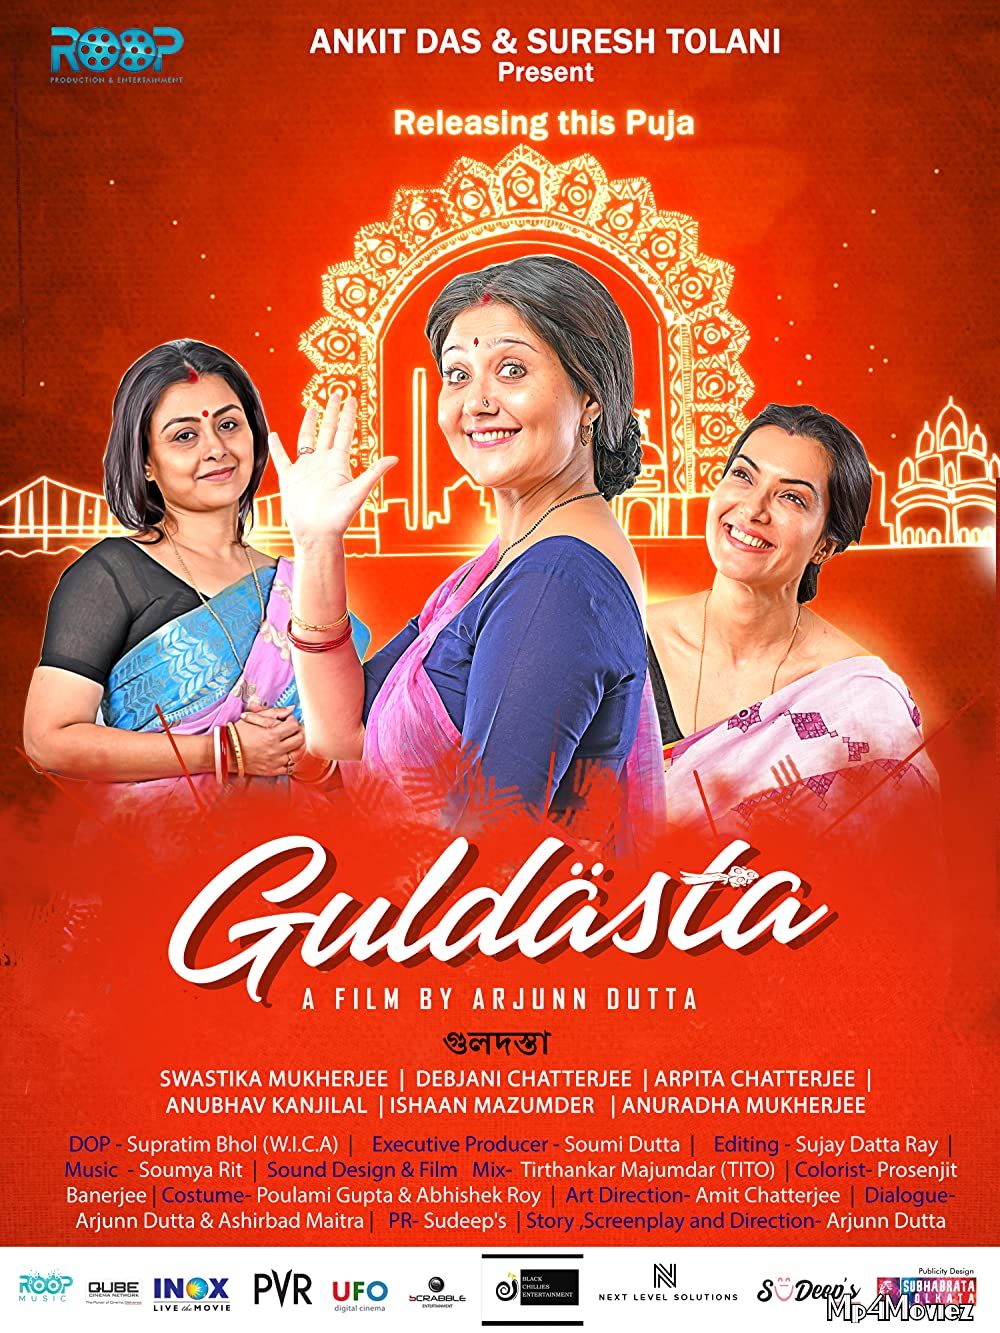 Guldasta (2021) Bengali Movie HDRip download full movie